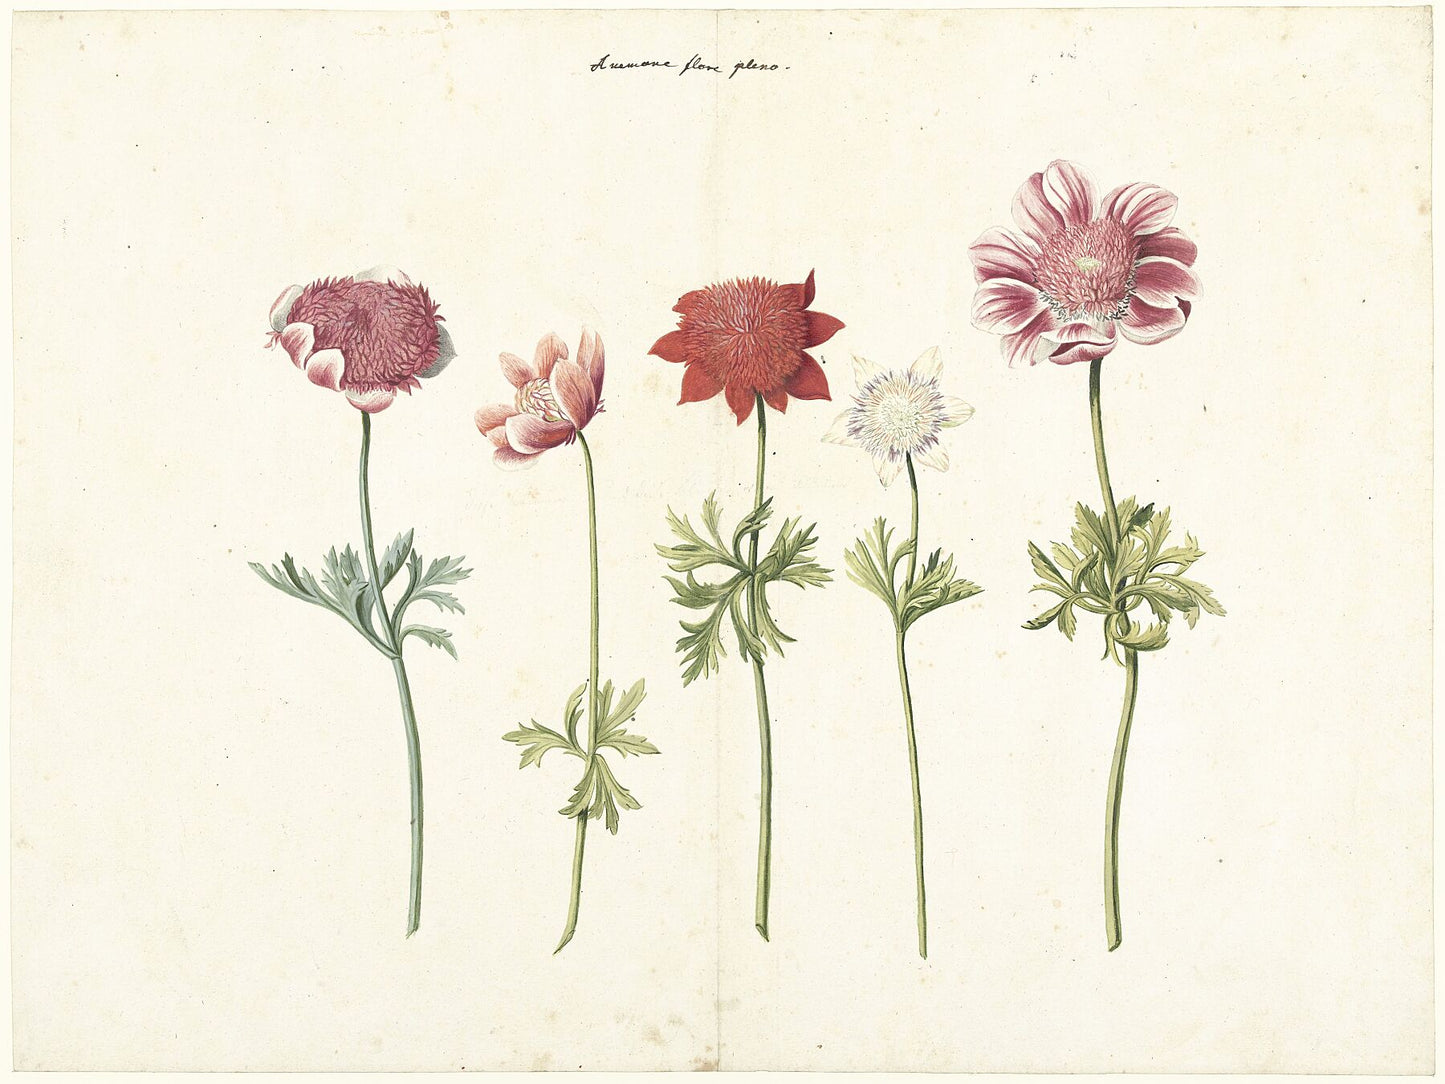 Five Studies of Anemones, anonymous - c. 1760-1770